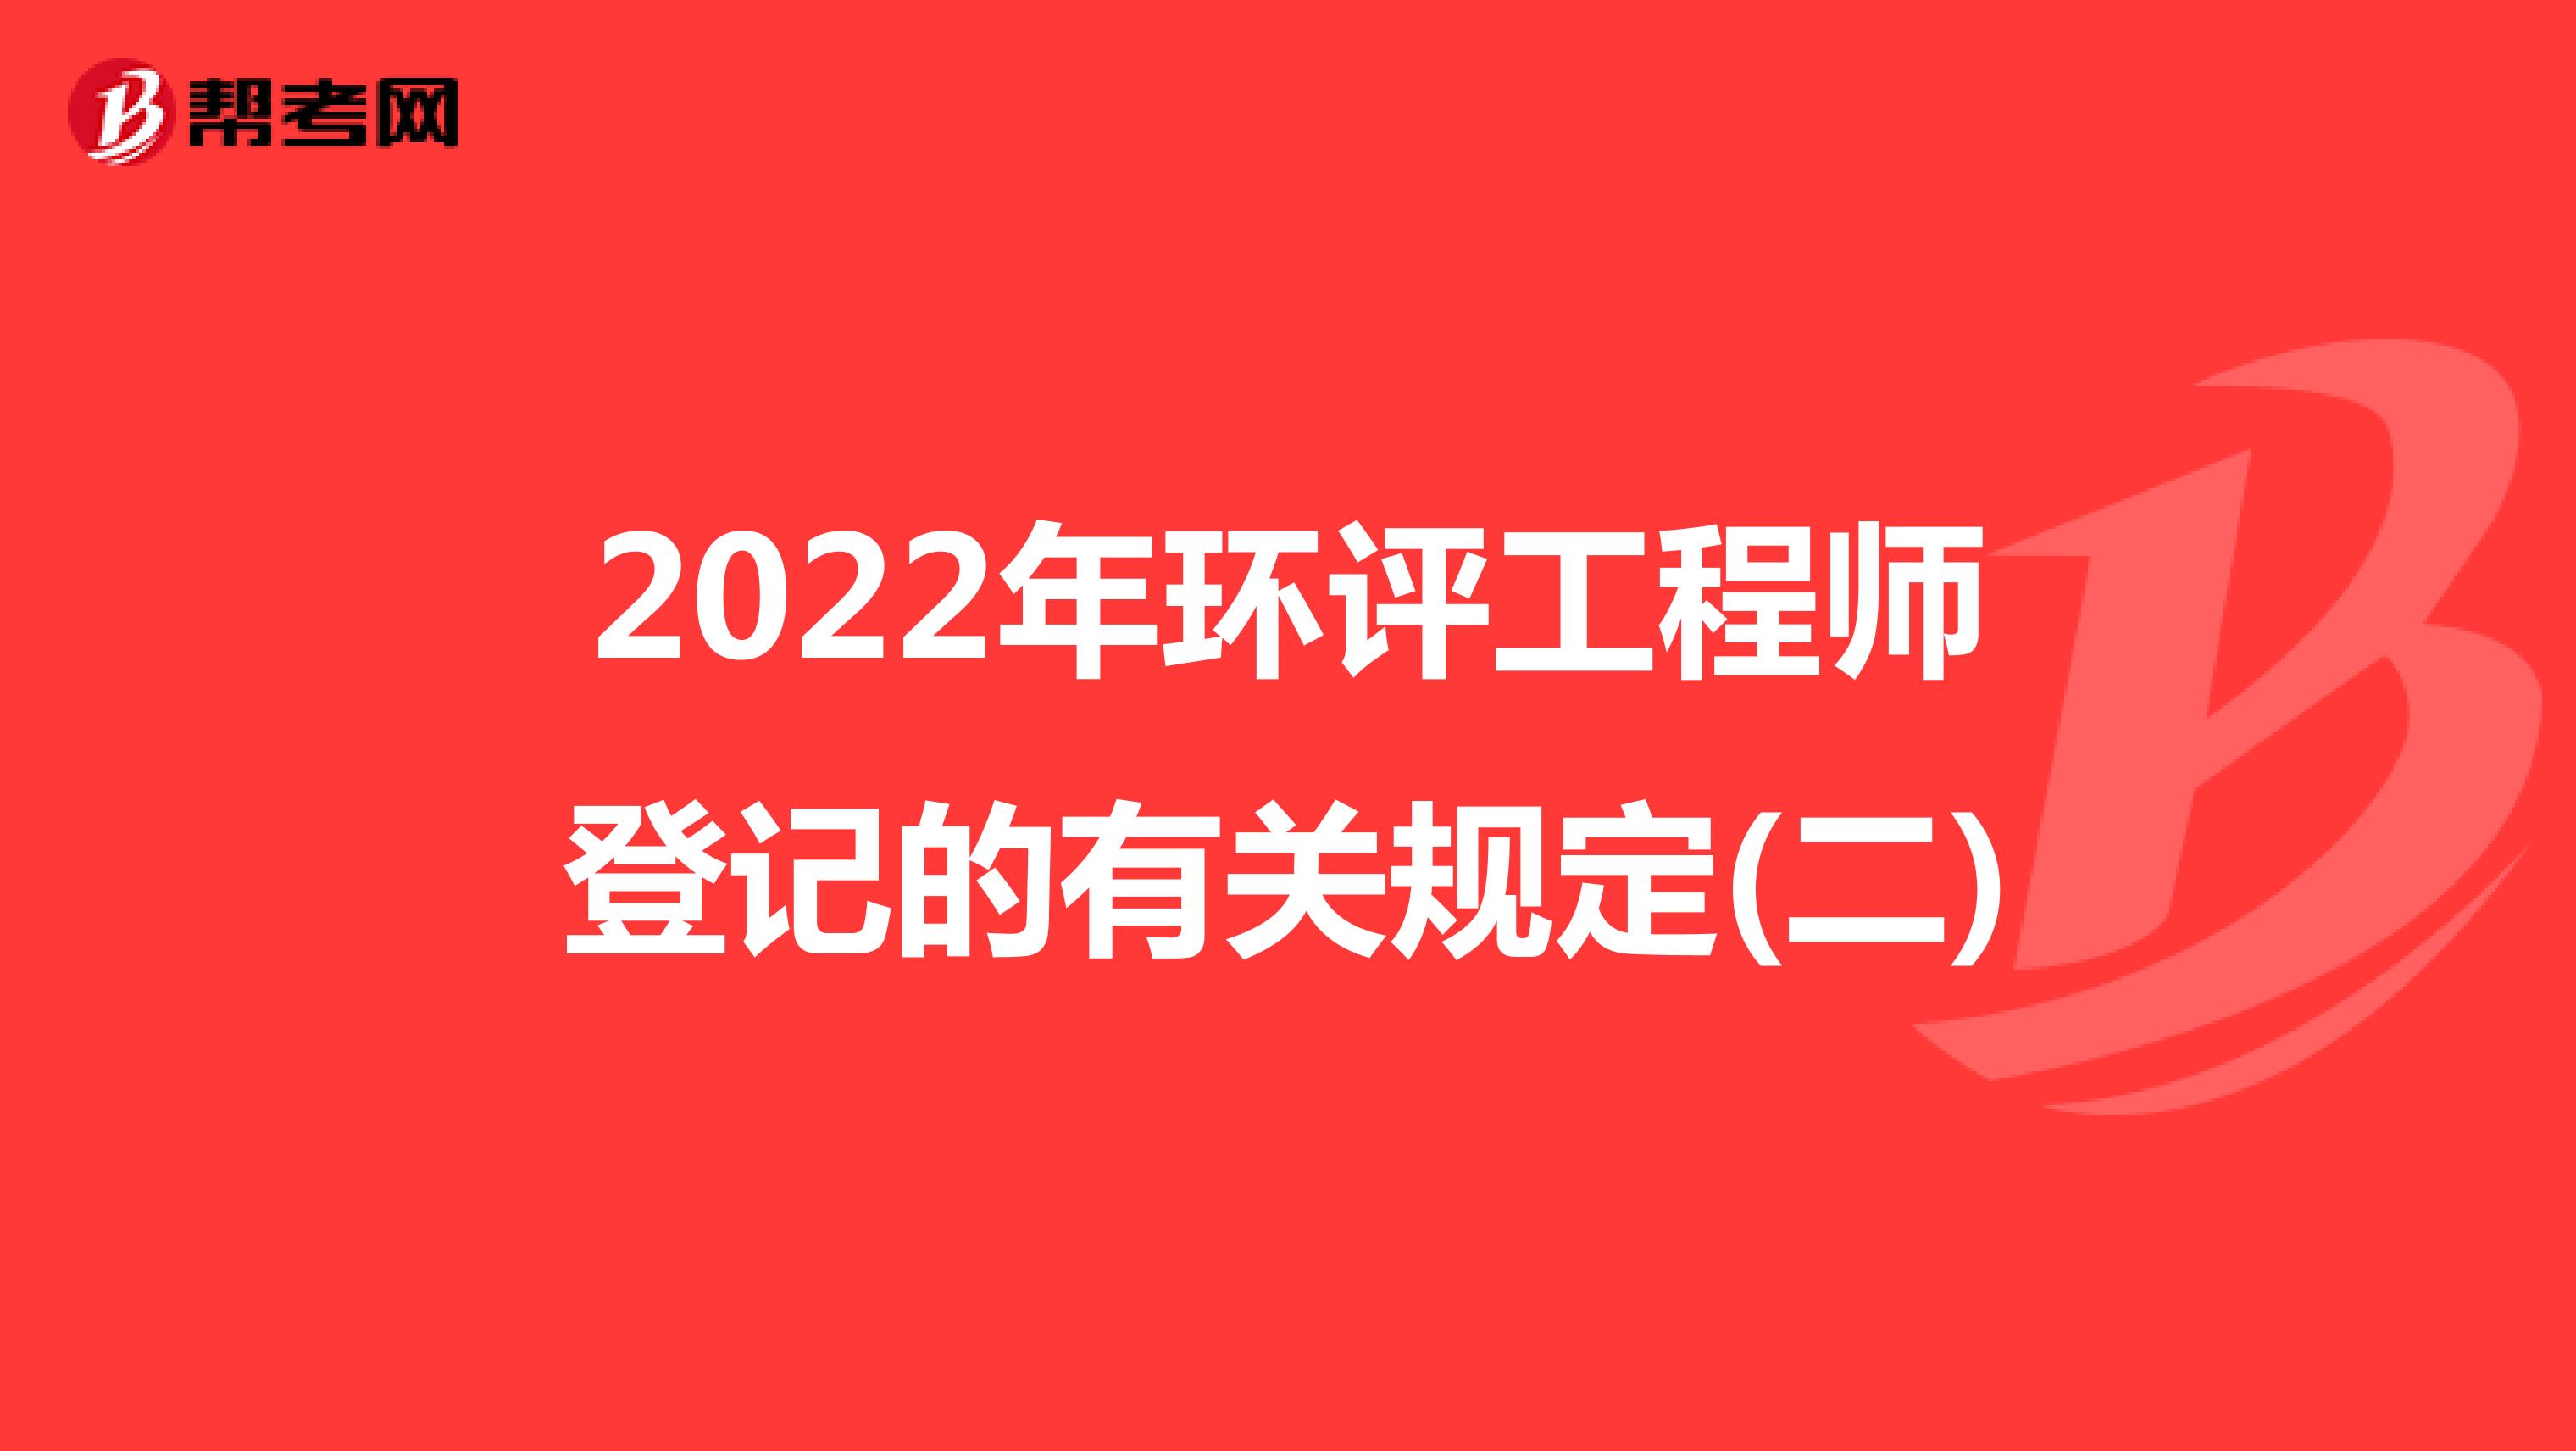 2022年环评工程师登记的有关规定(二)